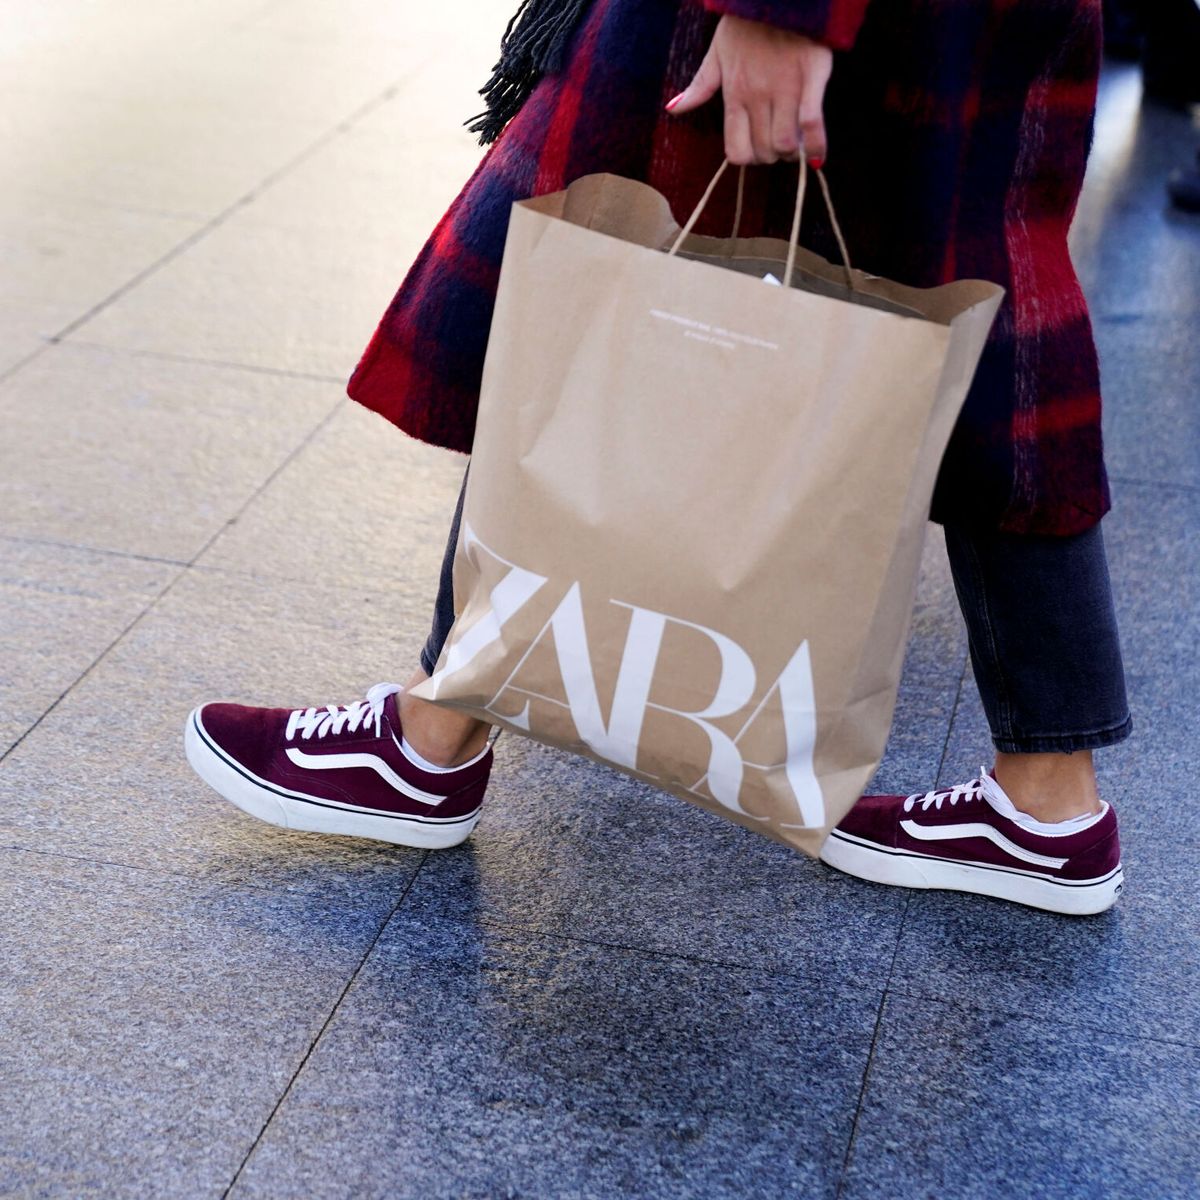 Zara anuncia la fecha de llegada de su web de ropa de segunda mano a España